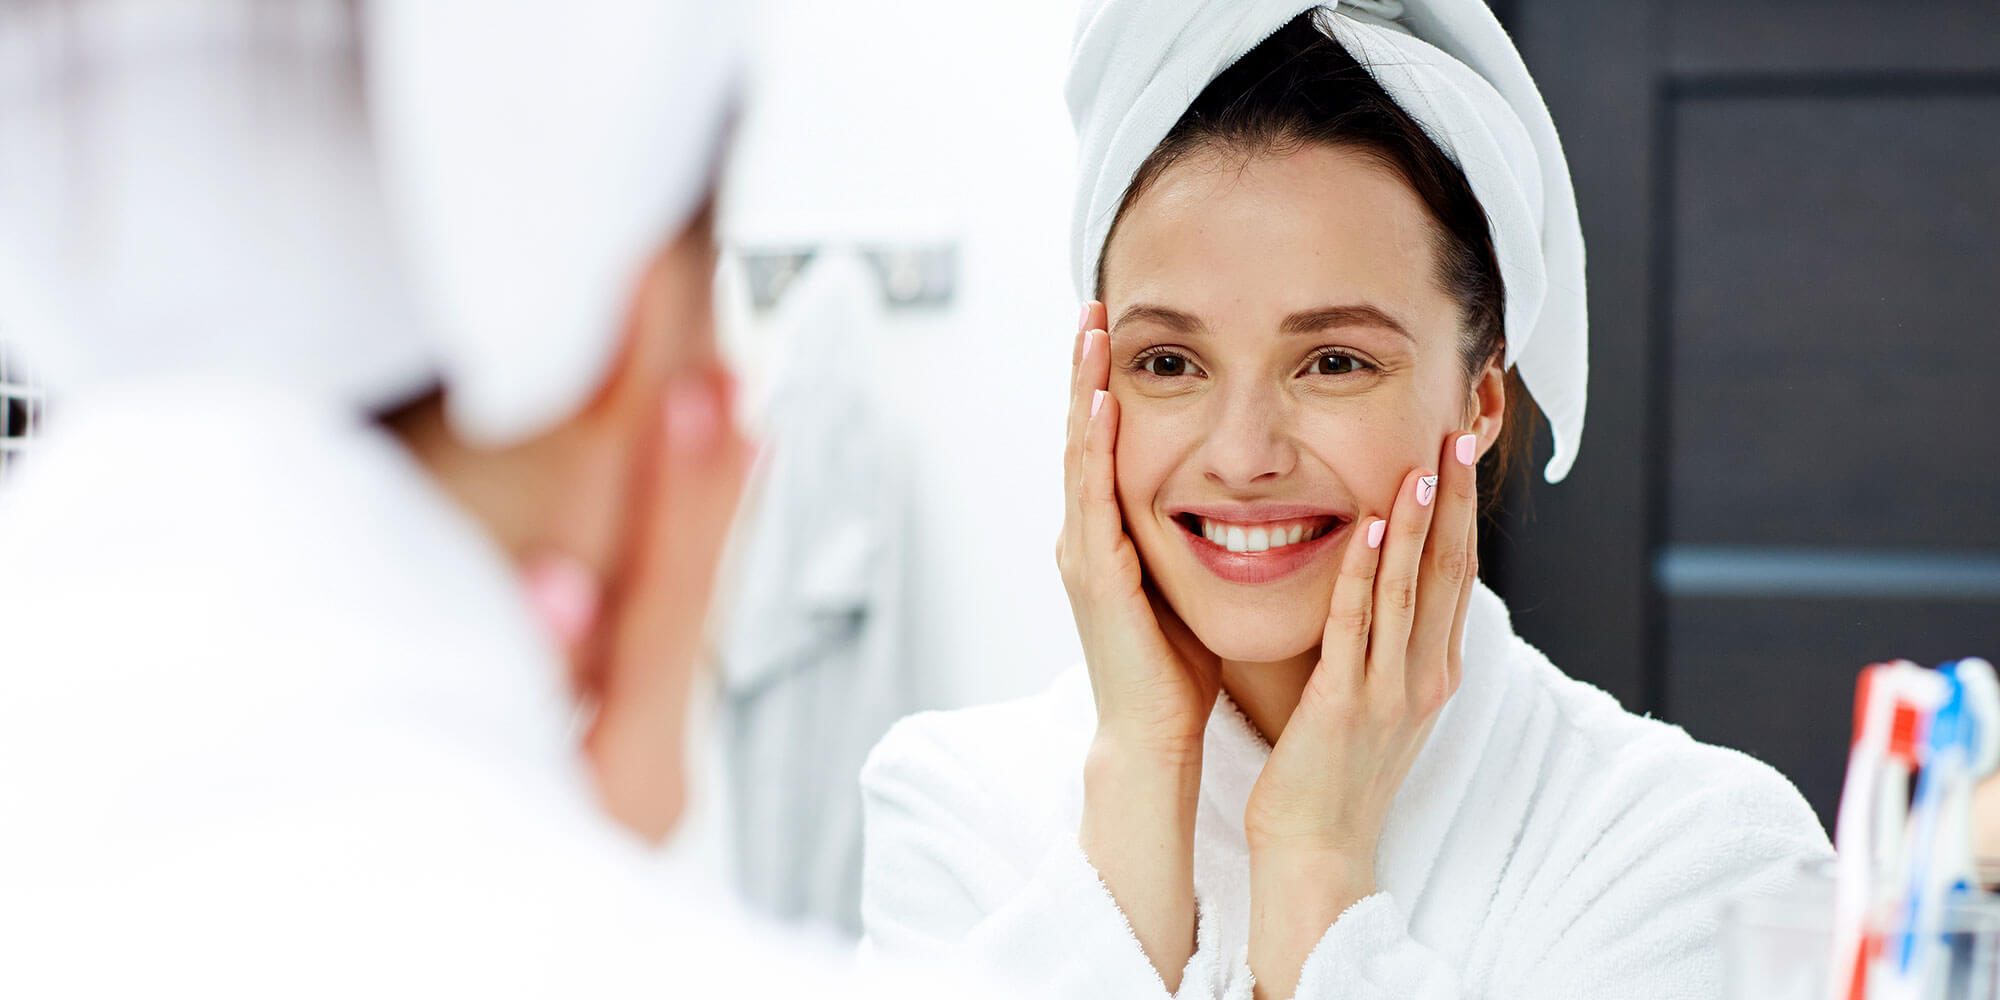 Anti-Aging Skin Care Tips